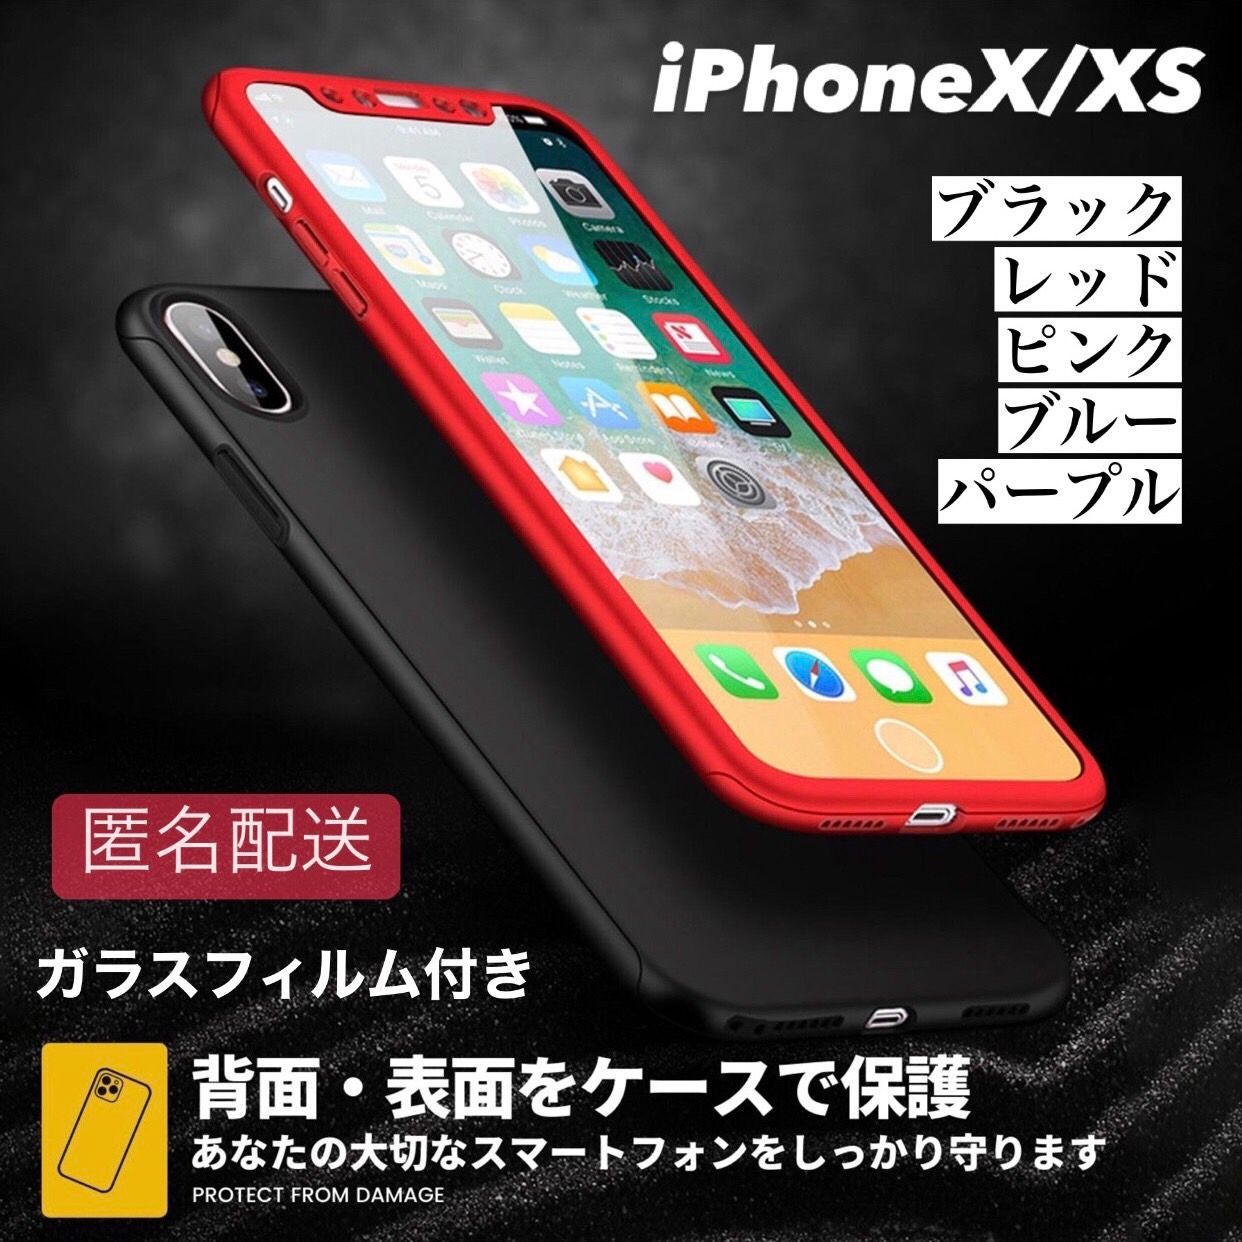 フルカバー・3D全面保護iPhoneガラスフィルム・XS max・XS・XR・X